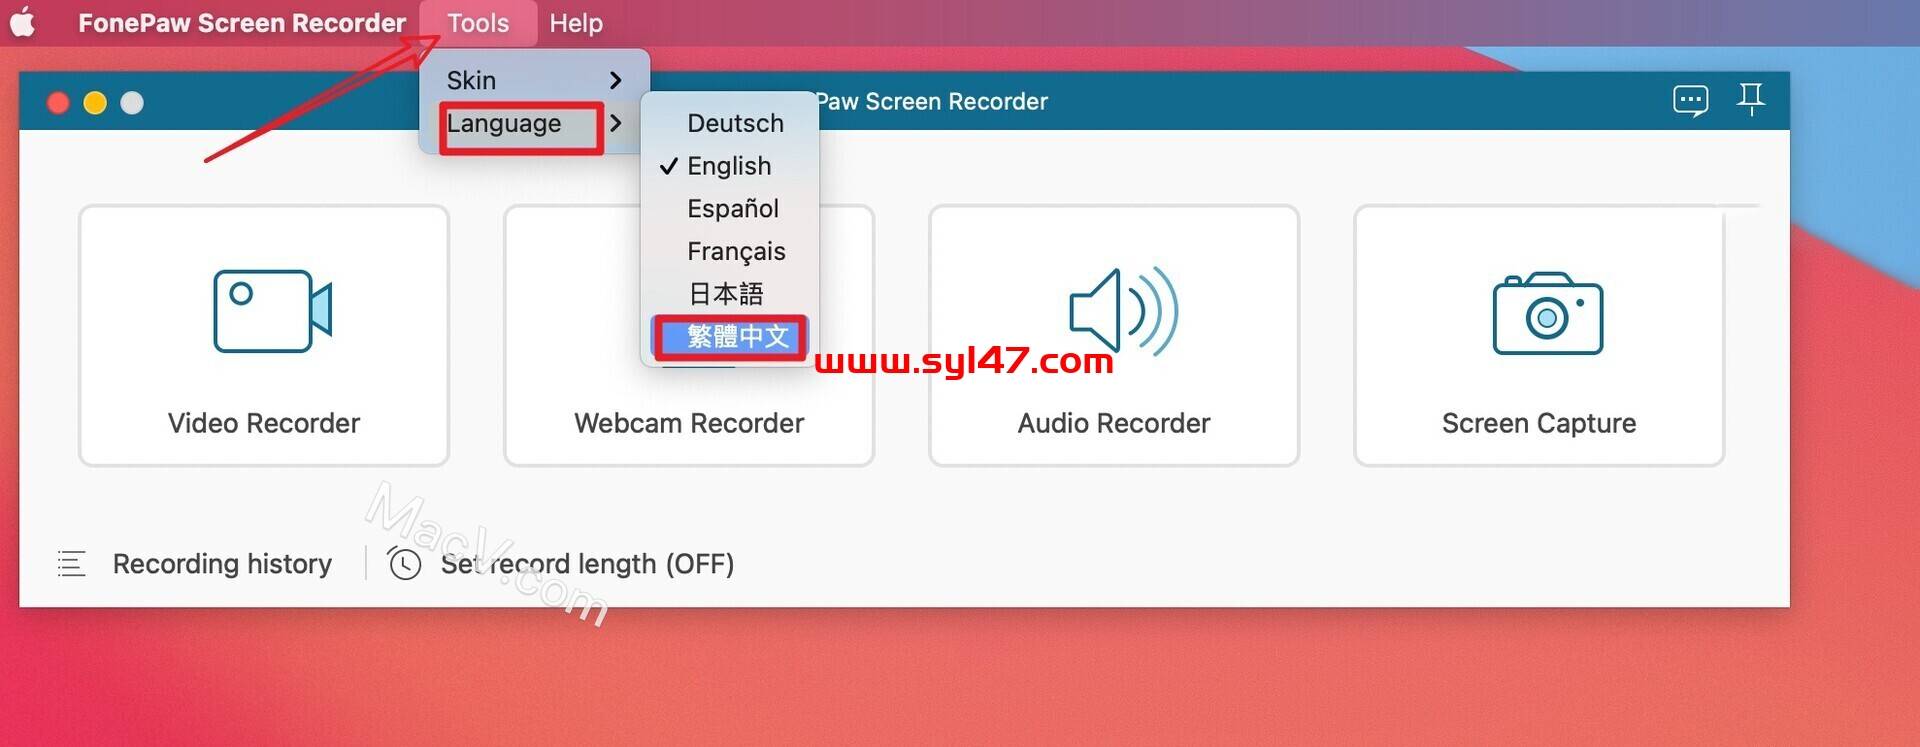 FonePaw Screen Recorder for Mac(简单但功能强大的屏幕录像机)插图